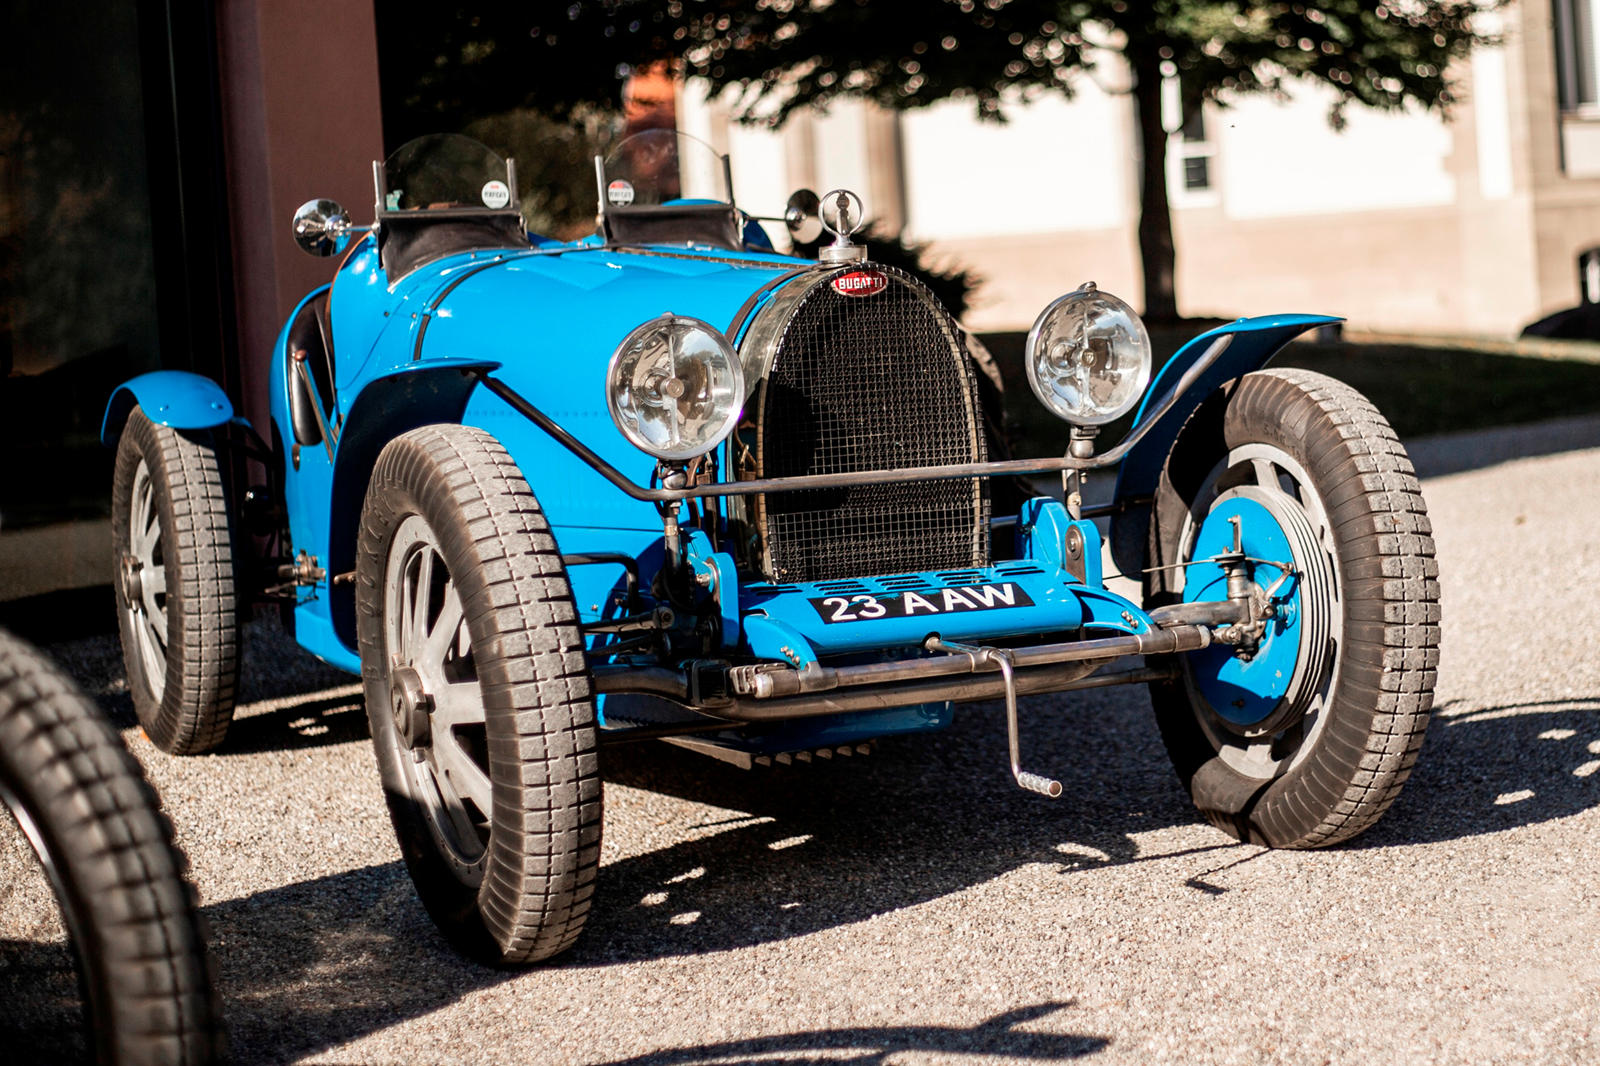 Ни Uedelhoven Studios, ни Bugatti еще не поделились какими-либо техническими подробностями о 35 D, но ясно, что шоу-кар оснащен современной подвеской, причем некоторые из этих компонентов видны, поскольку они выступают из кузова.